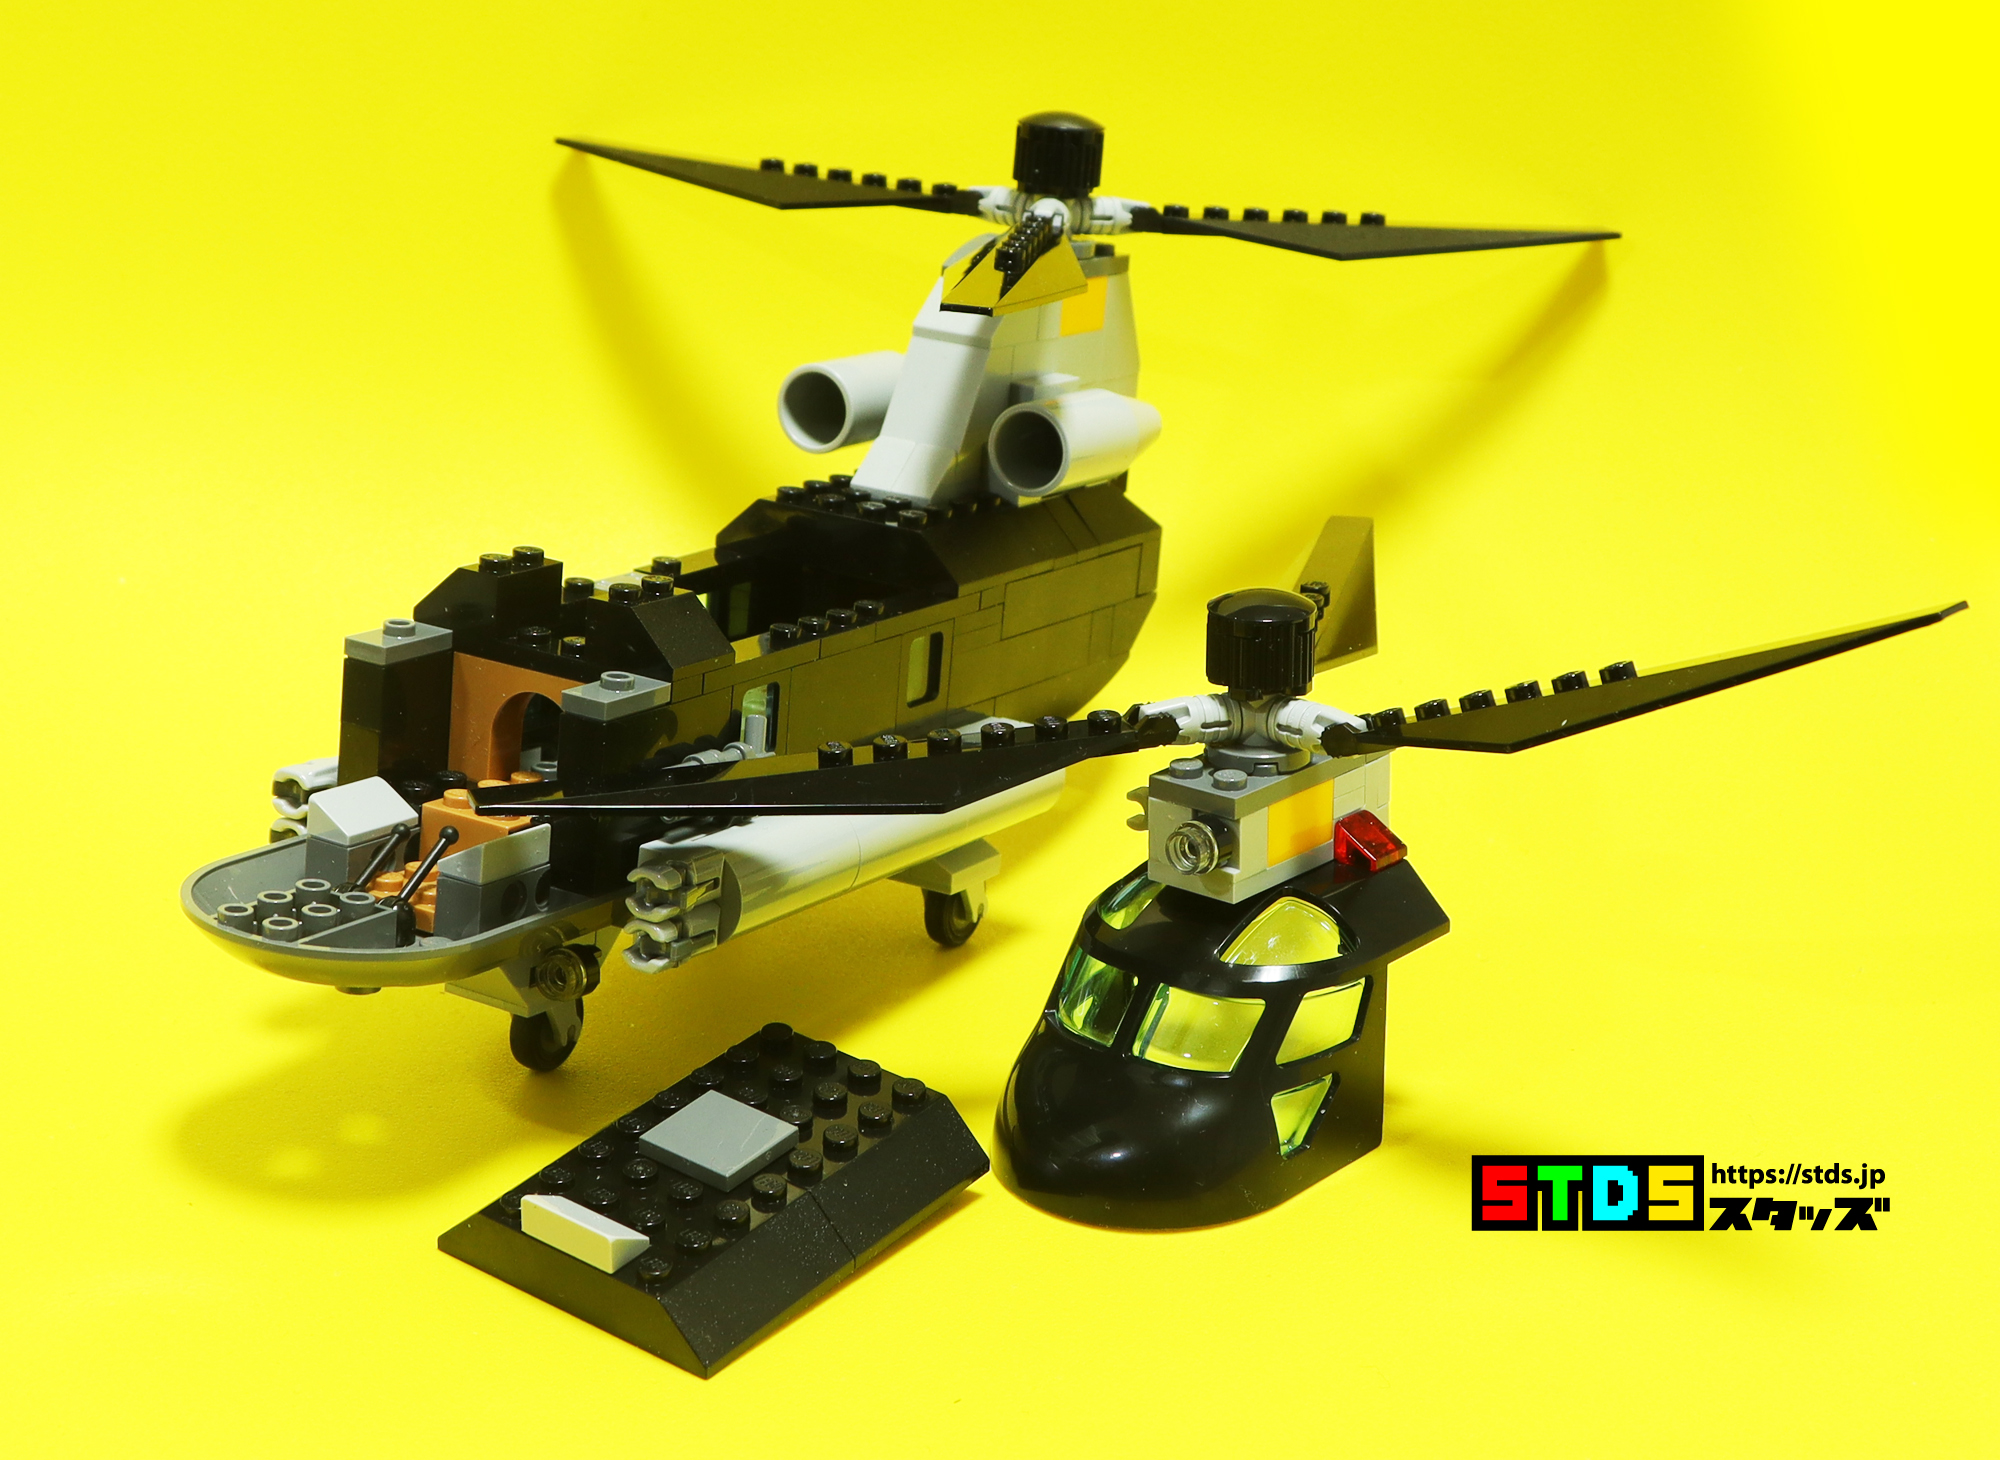 レゴ(R)76162ブラック・ウィドウヘリとCH-47チヌークを比較しながらレビューした